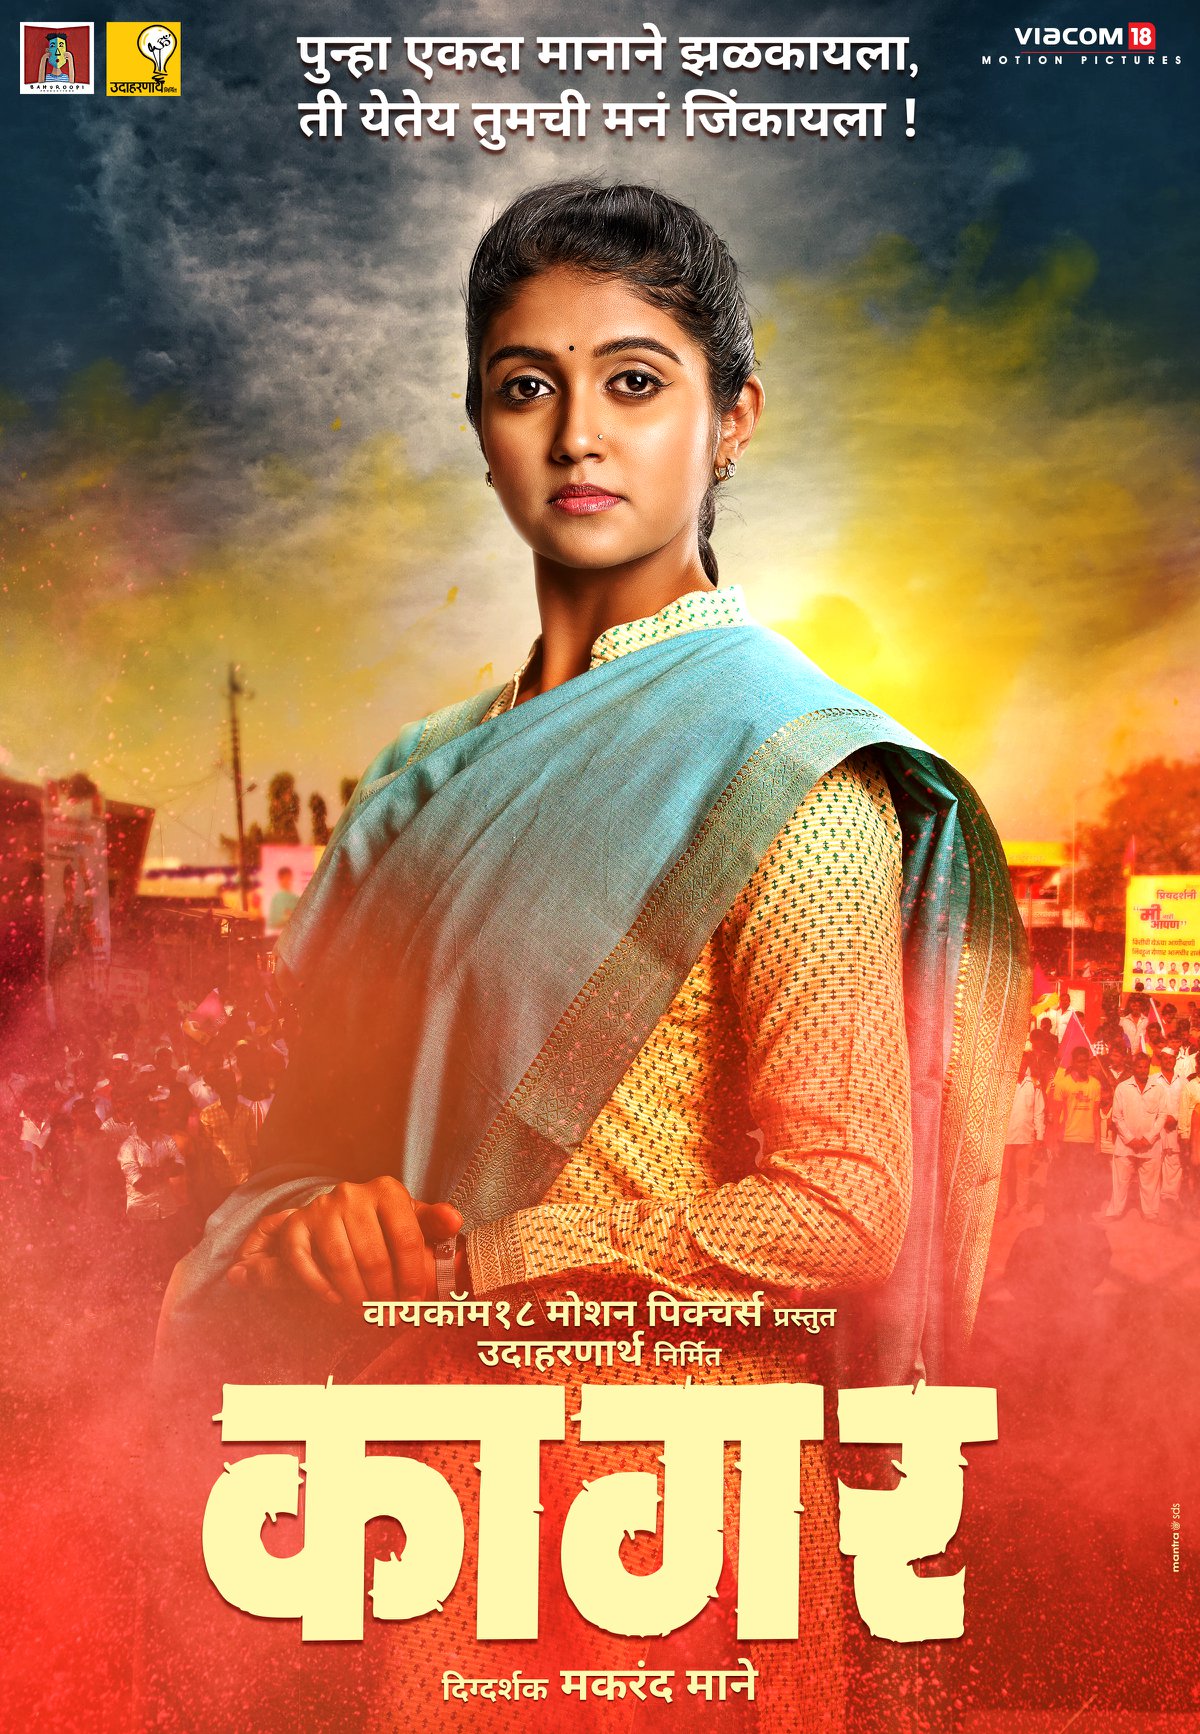 Kaagar (2019) Marathi Movie Cast Story Release Date